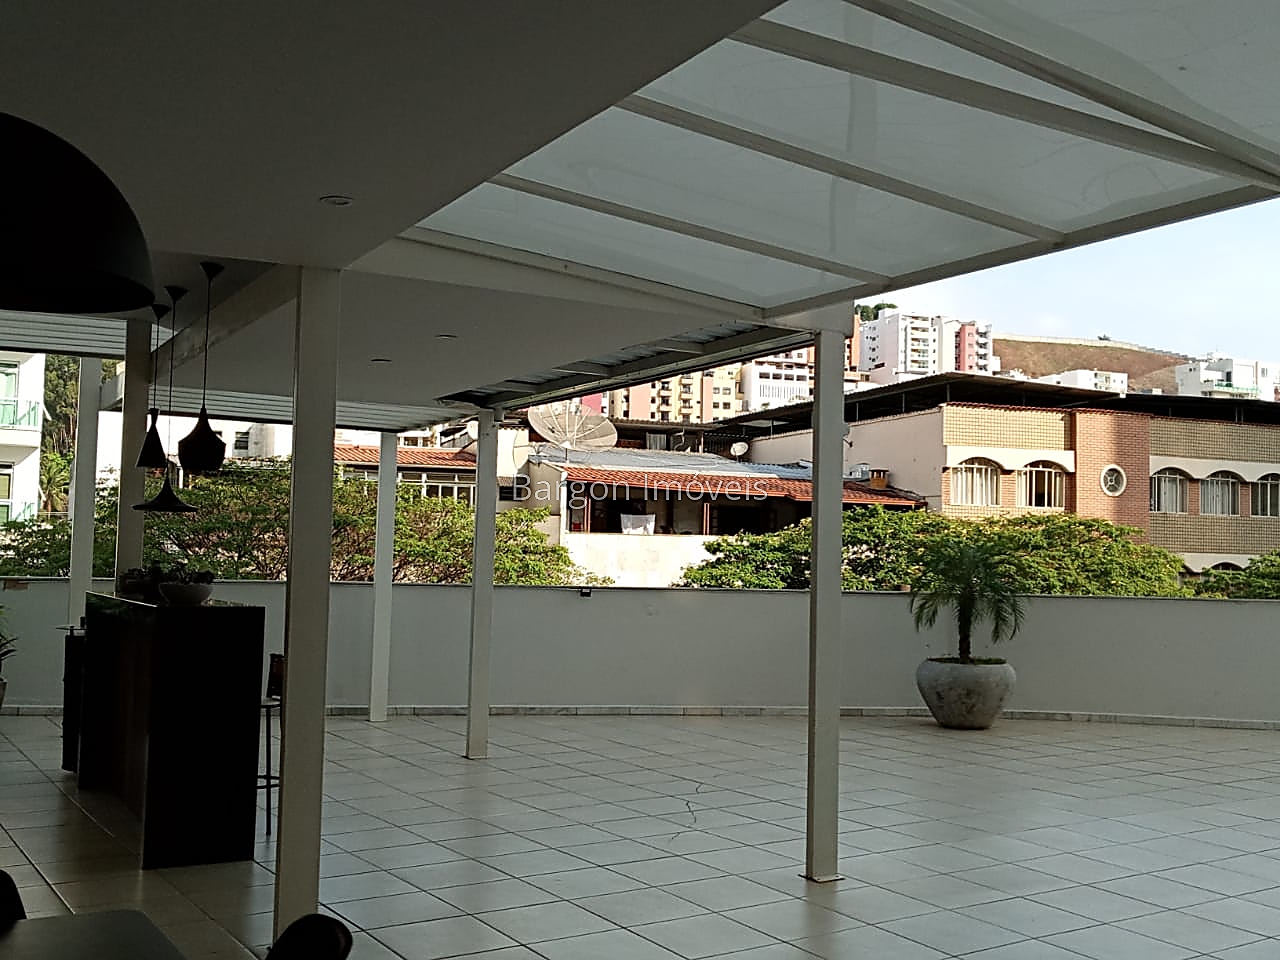 Apartamento à venda em São Mateus, Juiz de Fora - MG - Foto 8